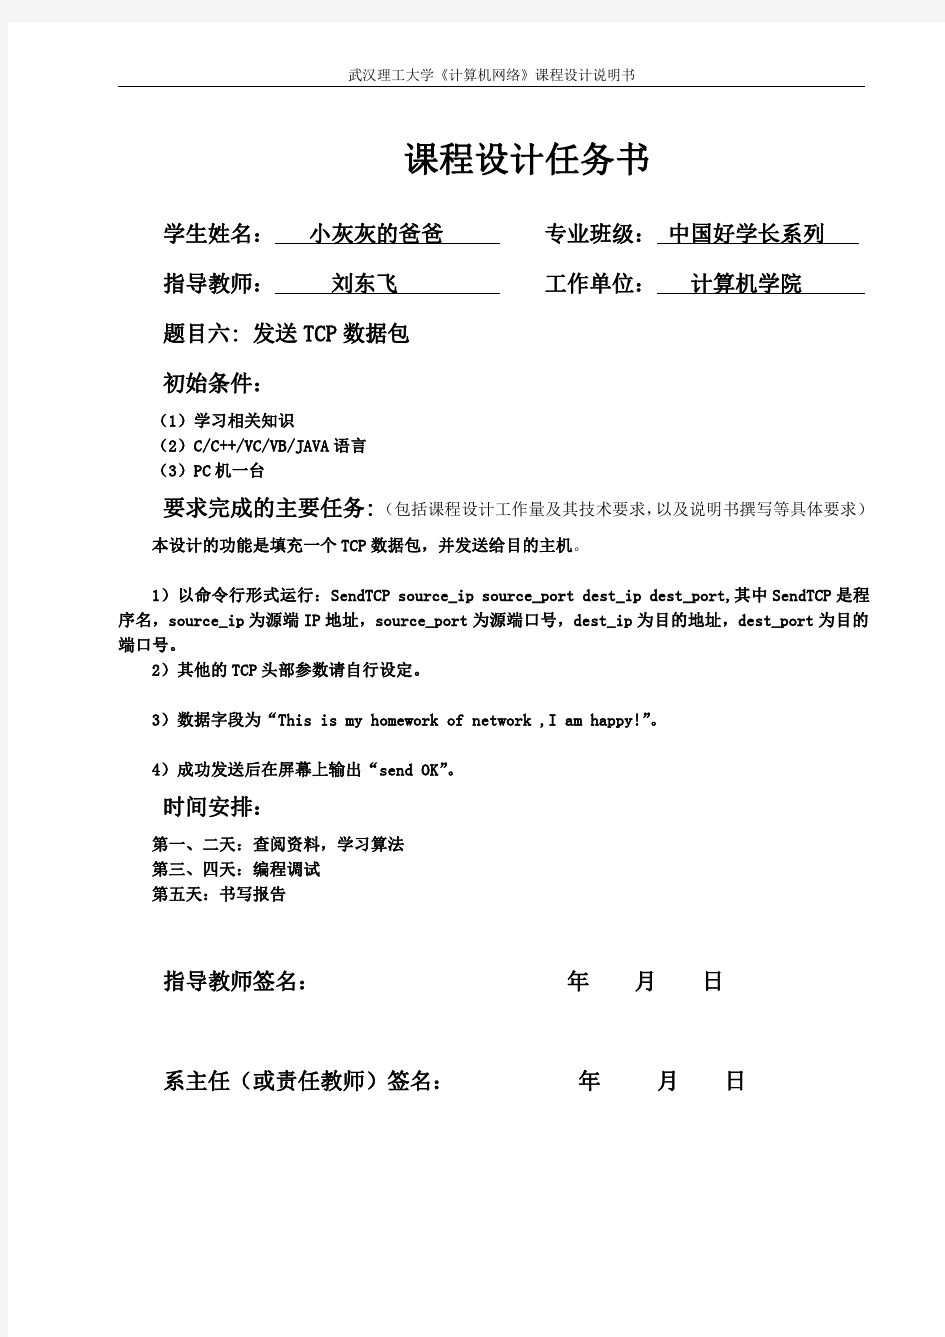 武汉理工大学 计算机网络课程设计 发送TCP数据包报告 中国好学长系列之小灰灰的爸爸